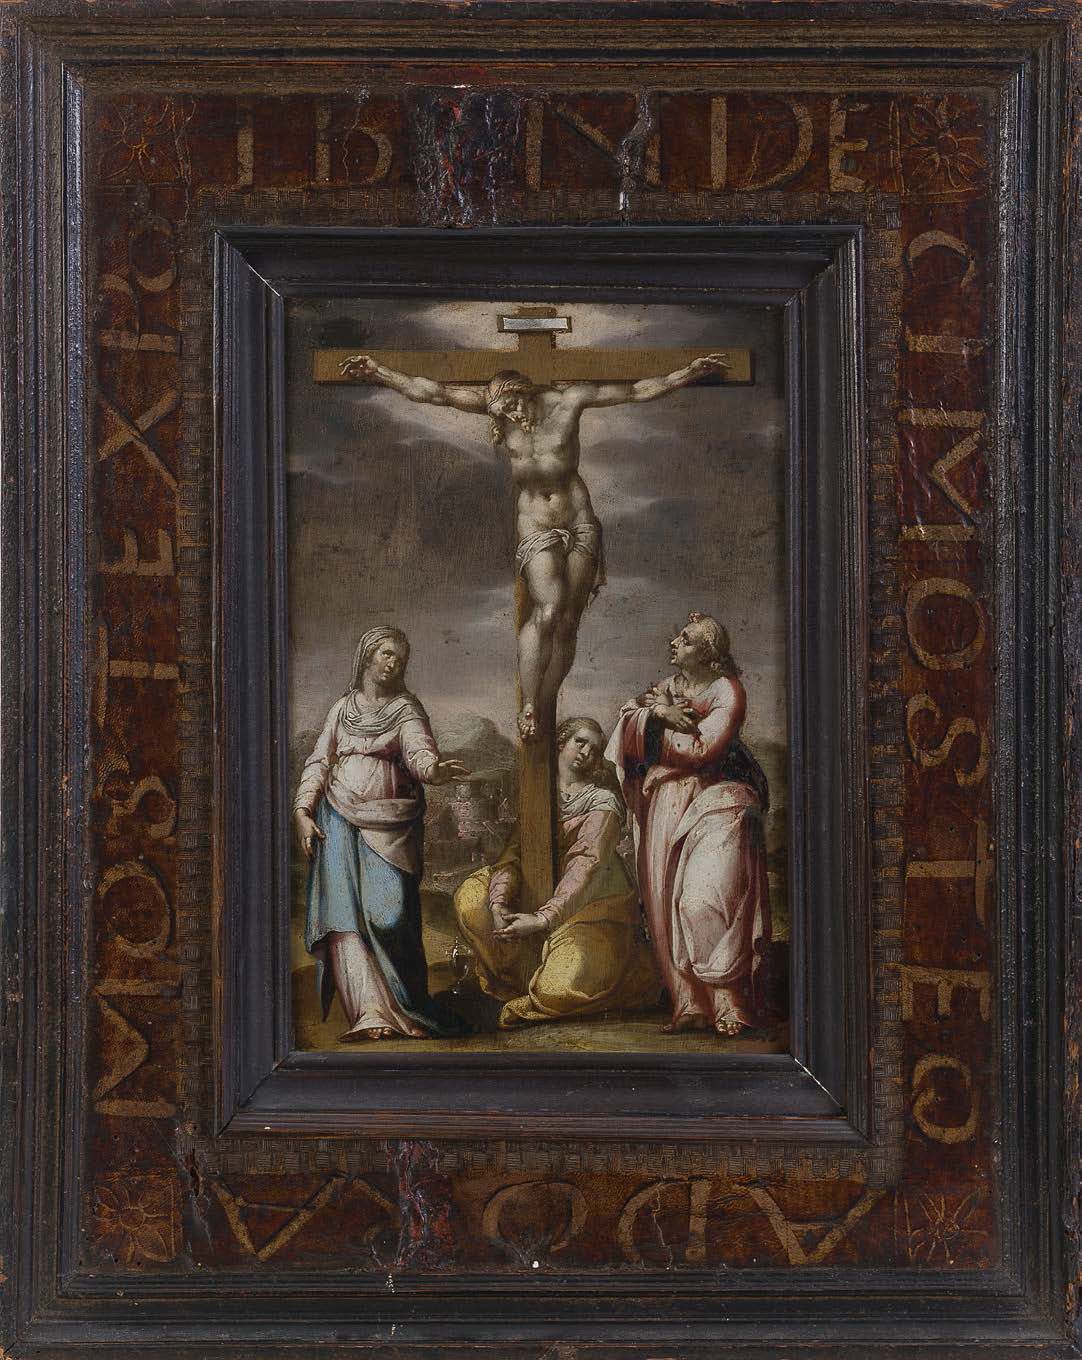 Francesco CAVAZZONI (Bologne 1559 - 1616) Die Kreuzigung
Kupfer
24 x 16,5 cm
In &hellip;